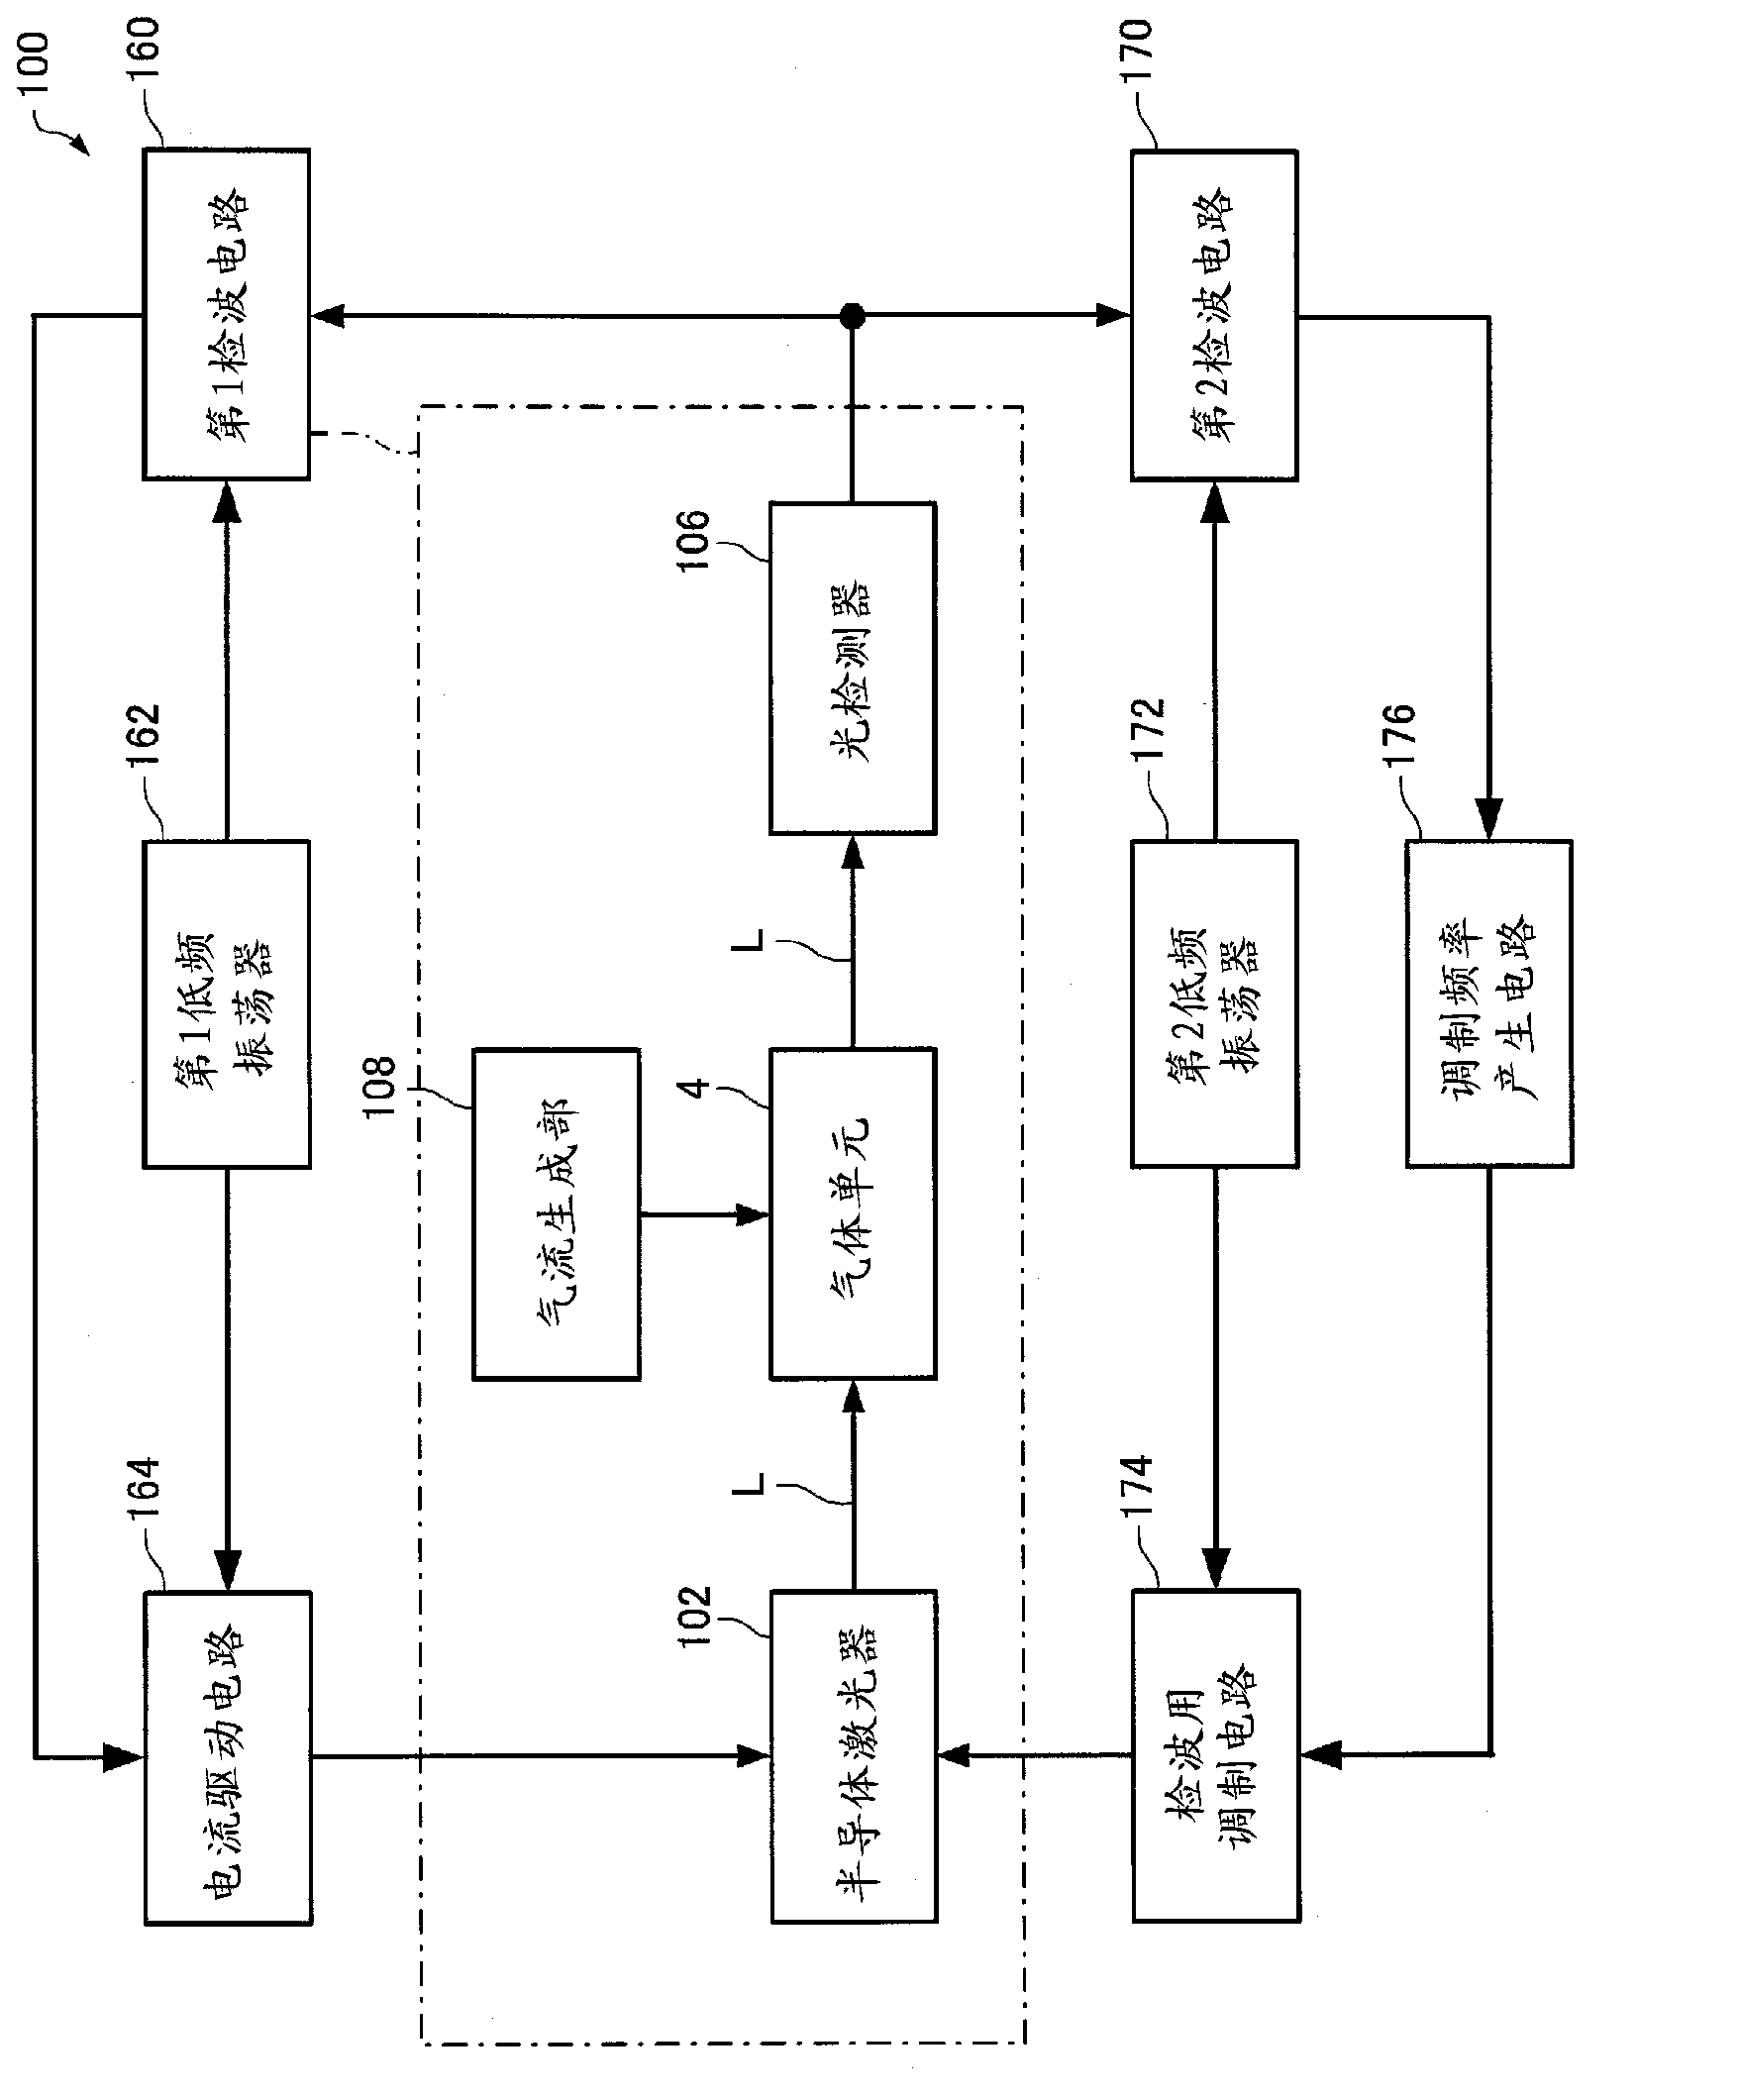 Optical module for atomic oscillator and atomic oscillator